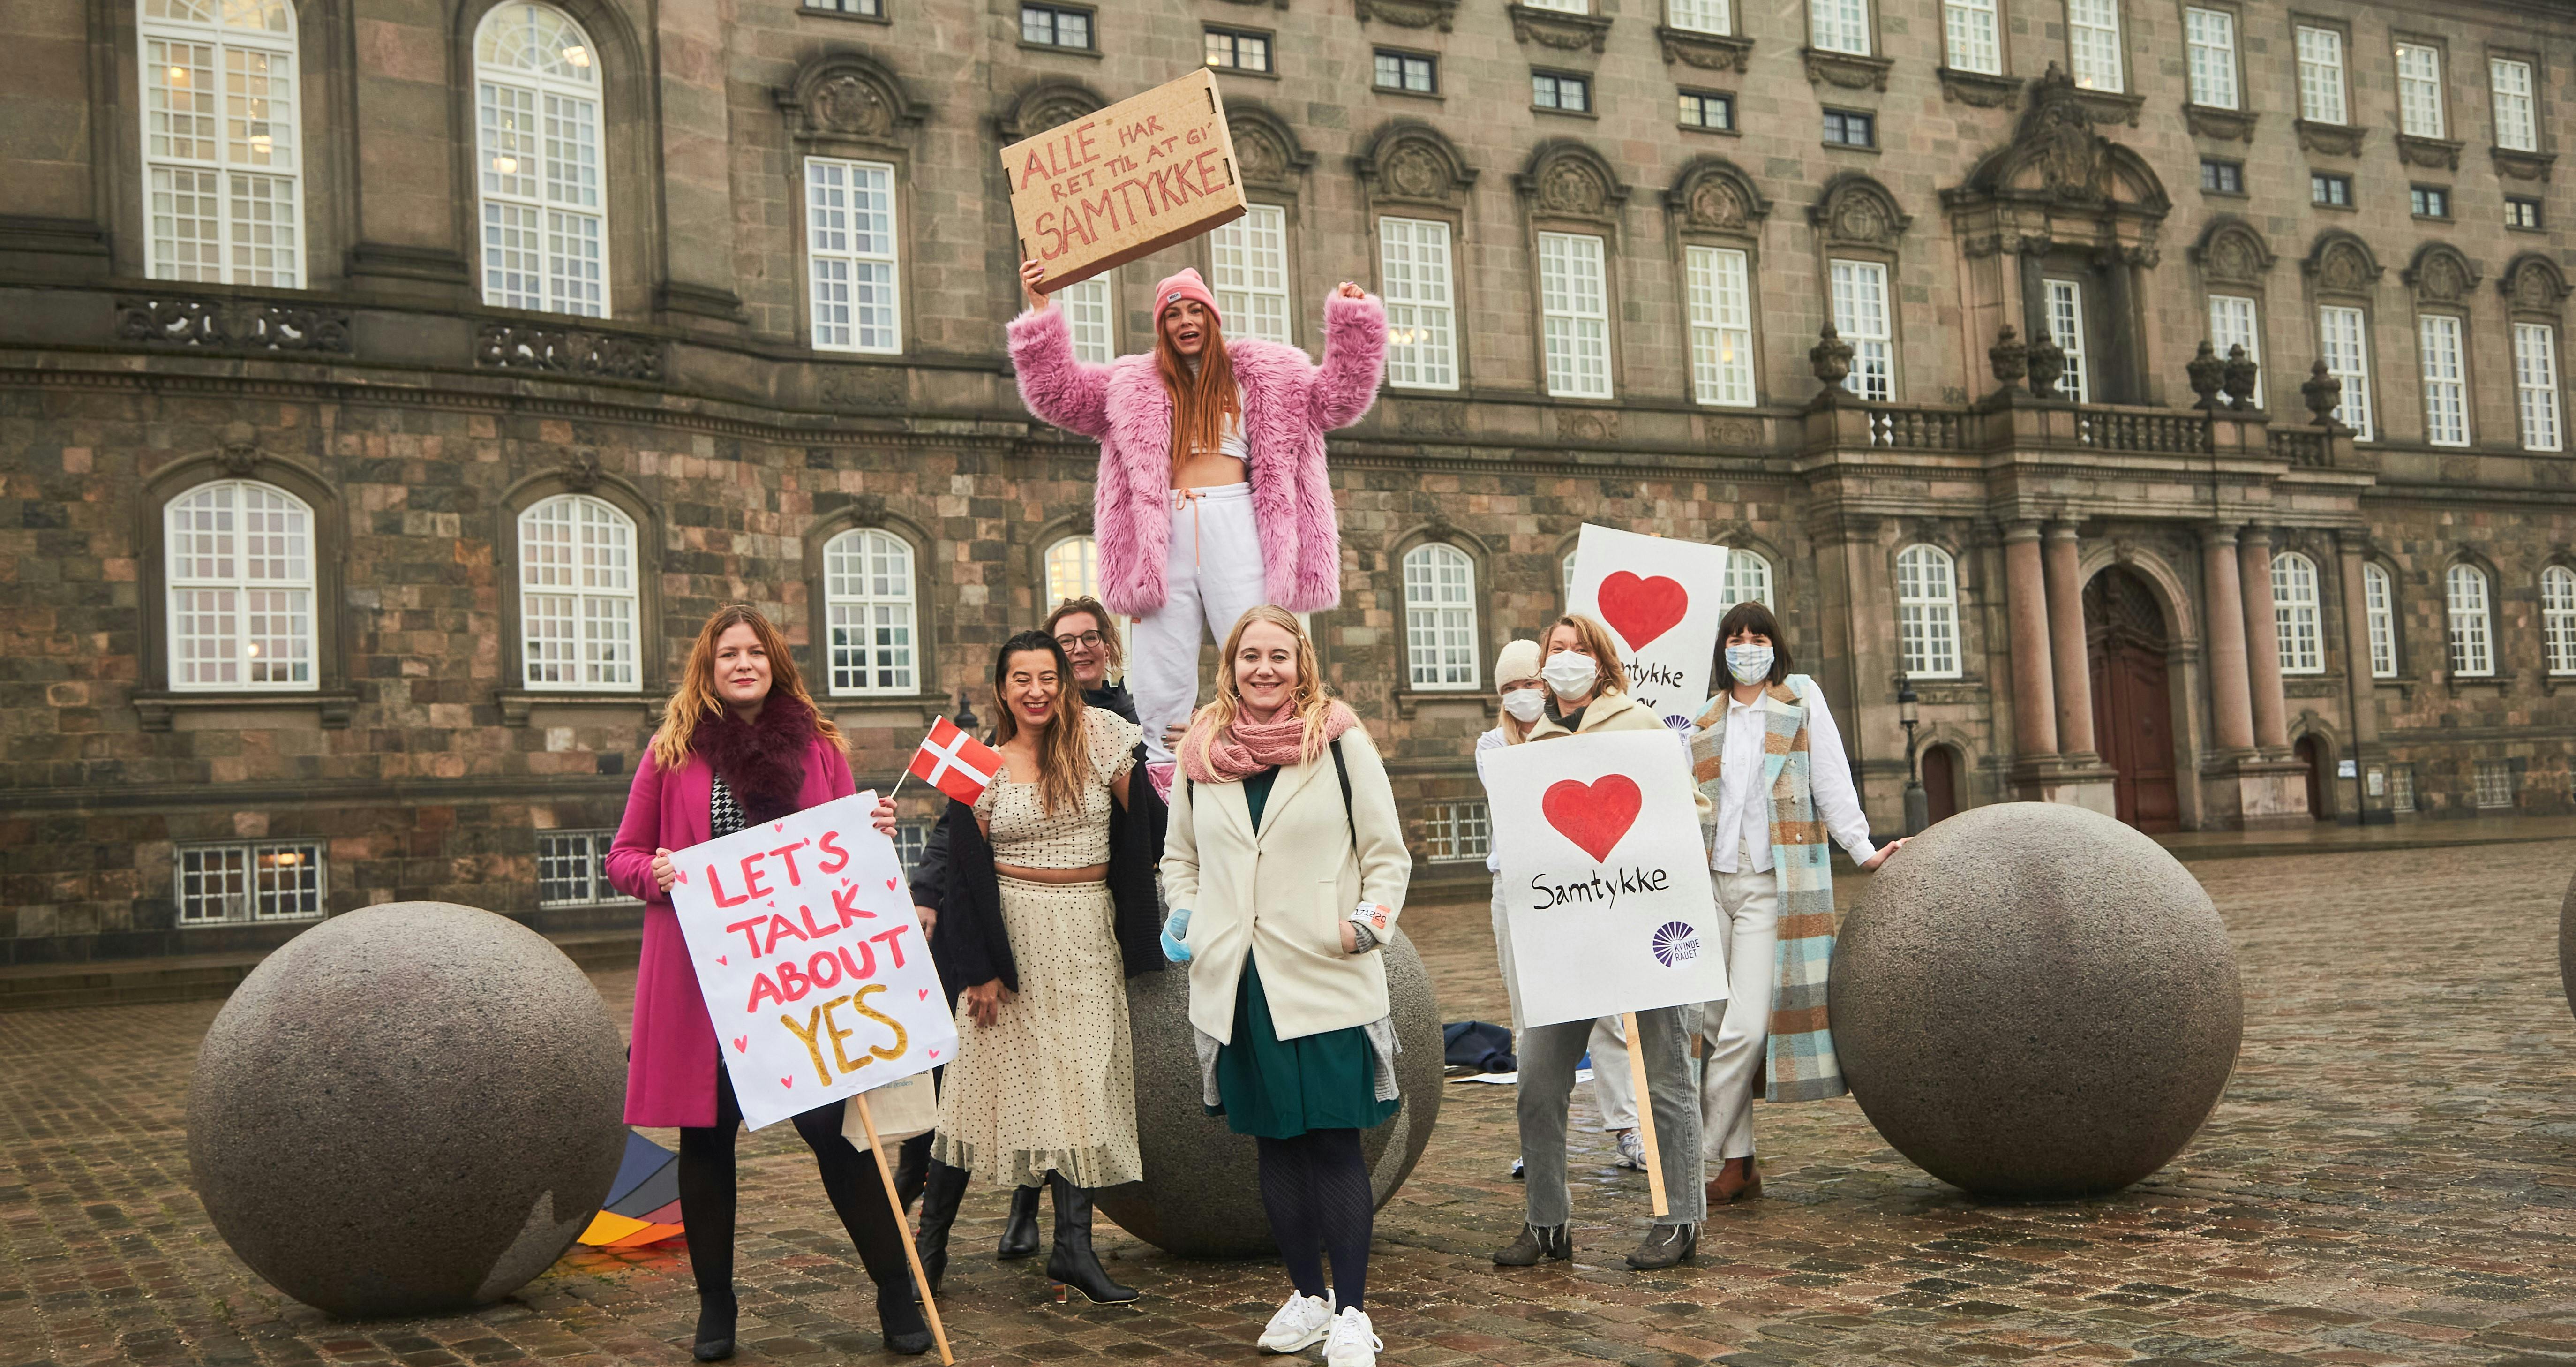 Den 17. december 2020 blev samtykkeloven stemt igennem af et enigt Folketing, og fejret af aktivister og Amnesty uden for Christiansborg. Foto: Søren Malmose/Amnesty International